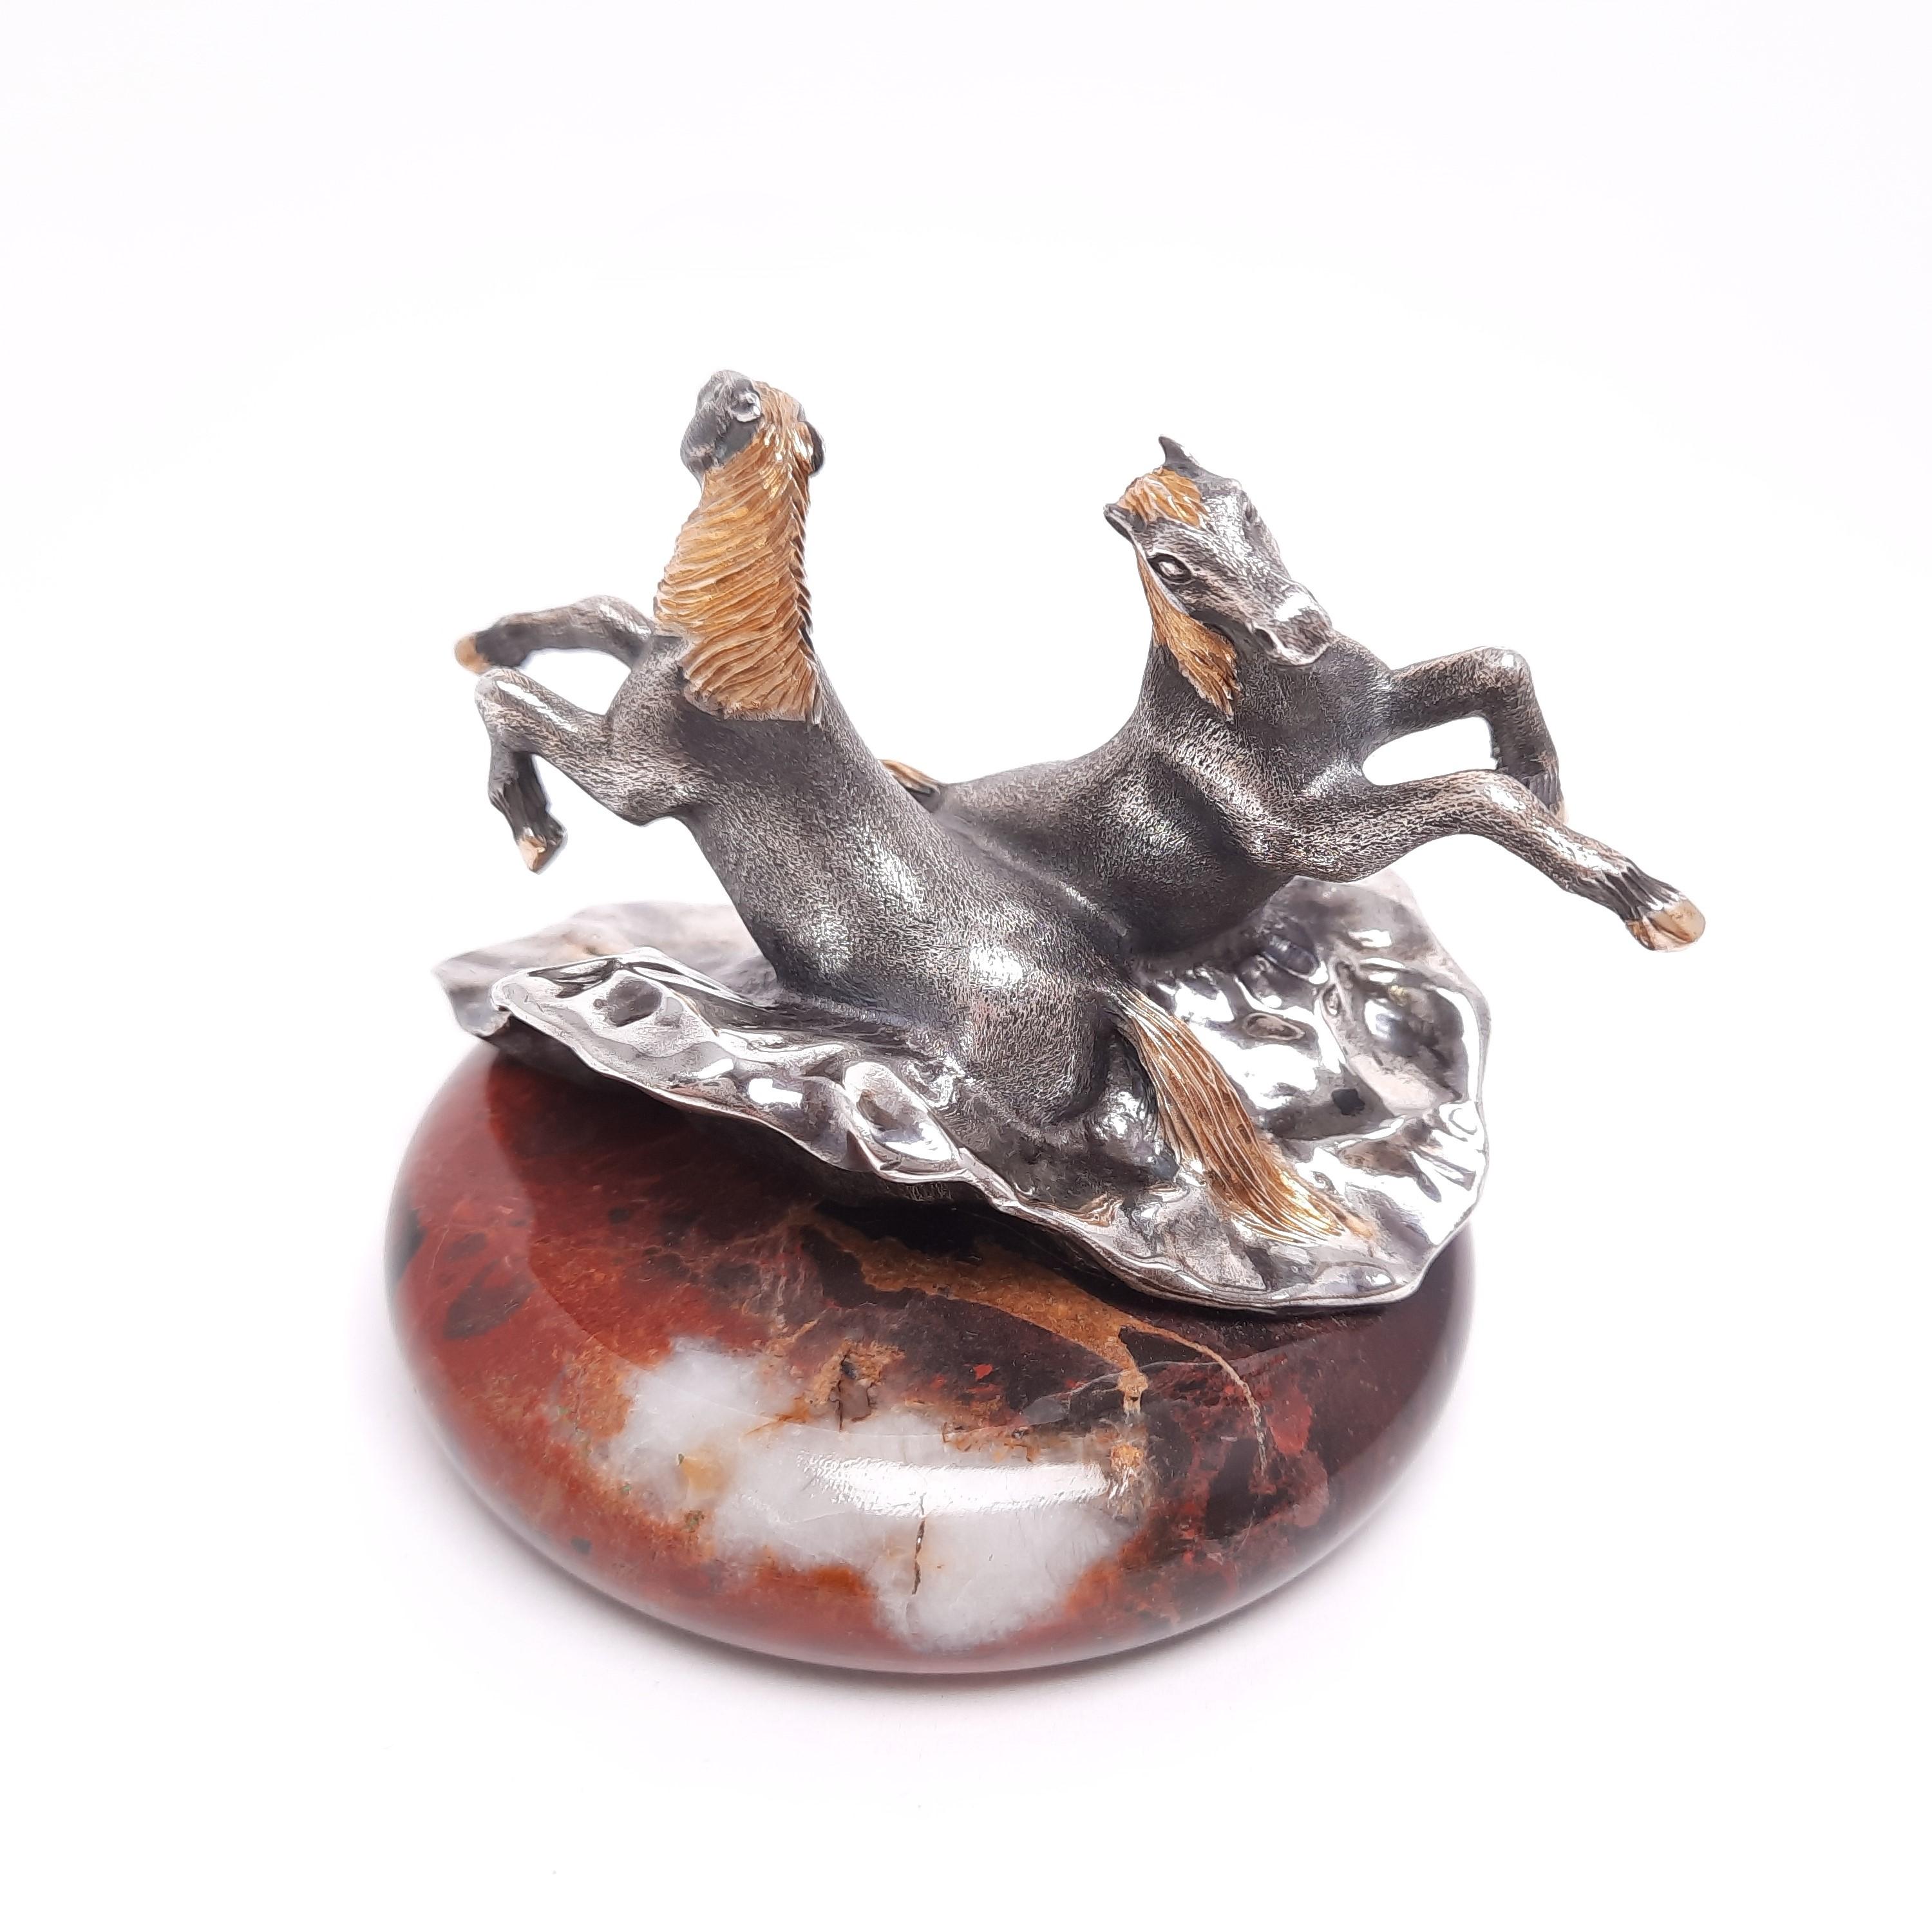 A horse miniature, 